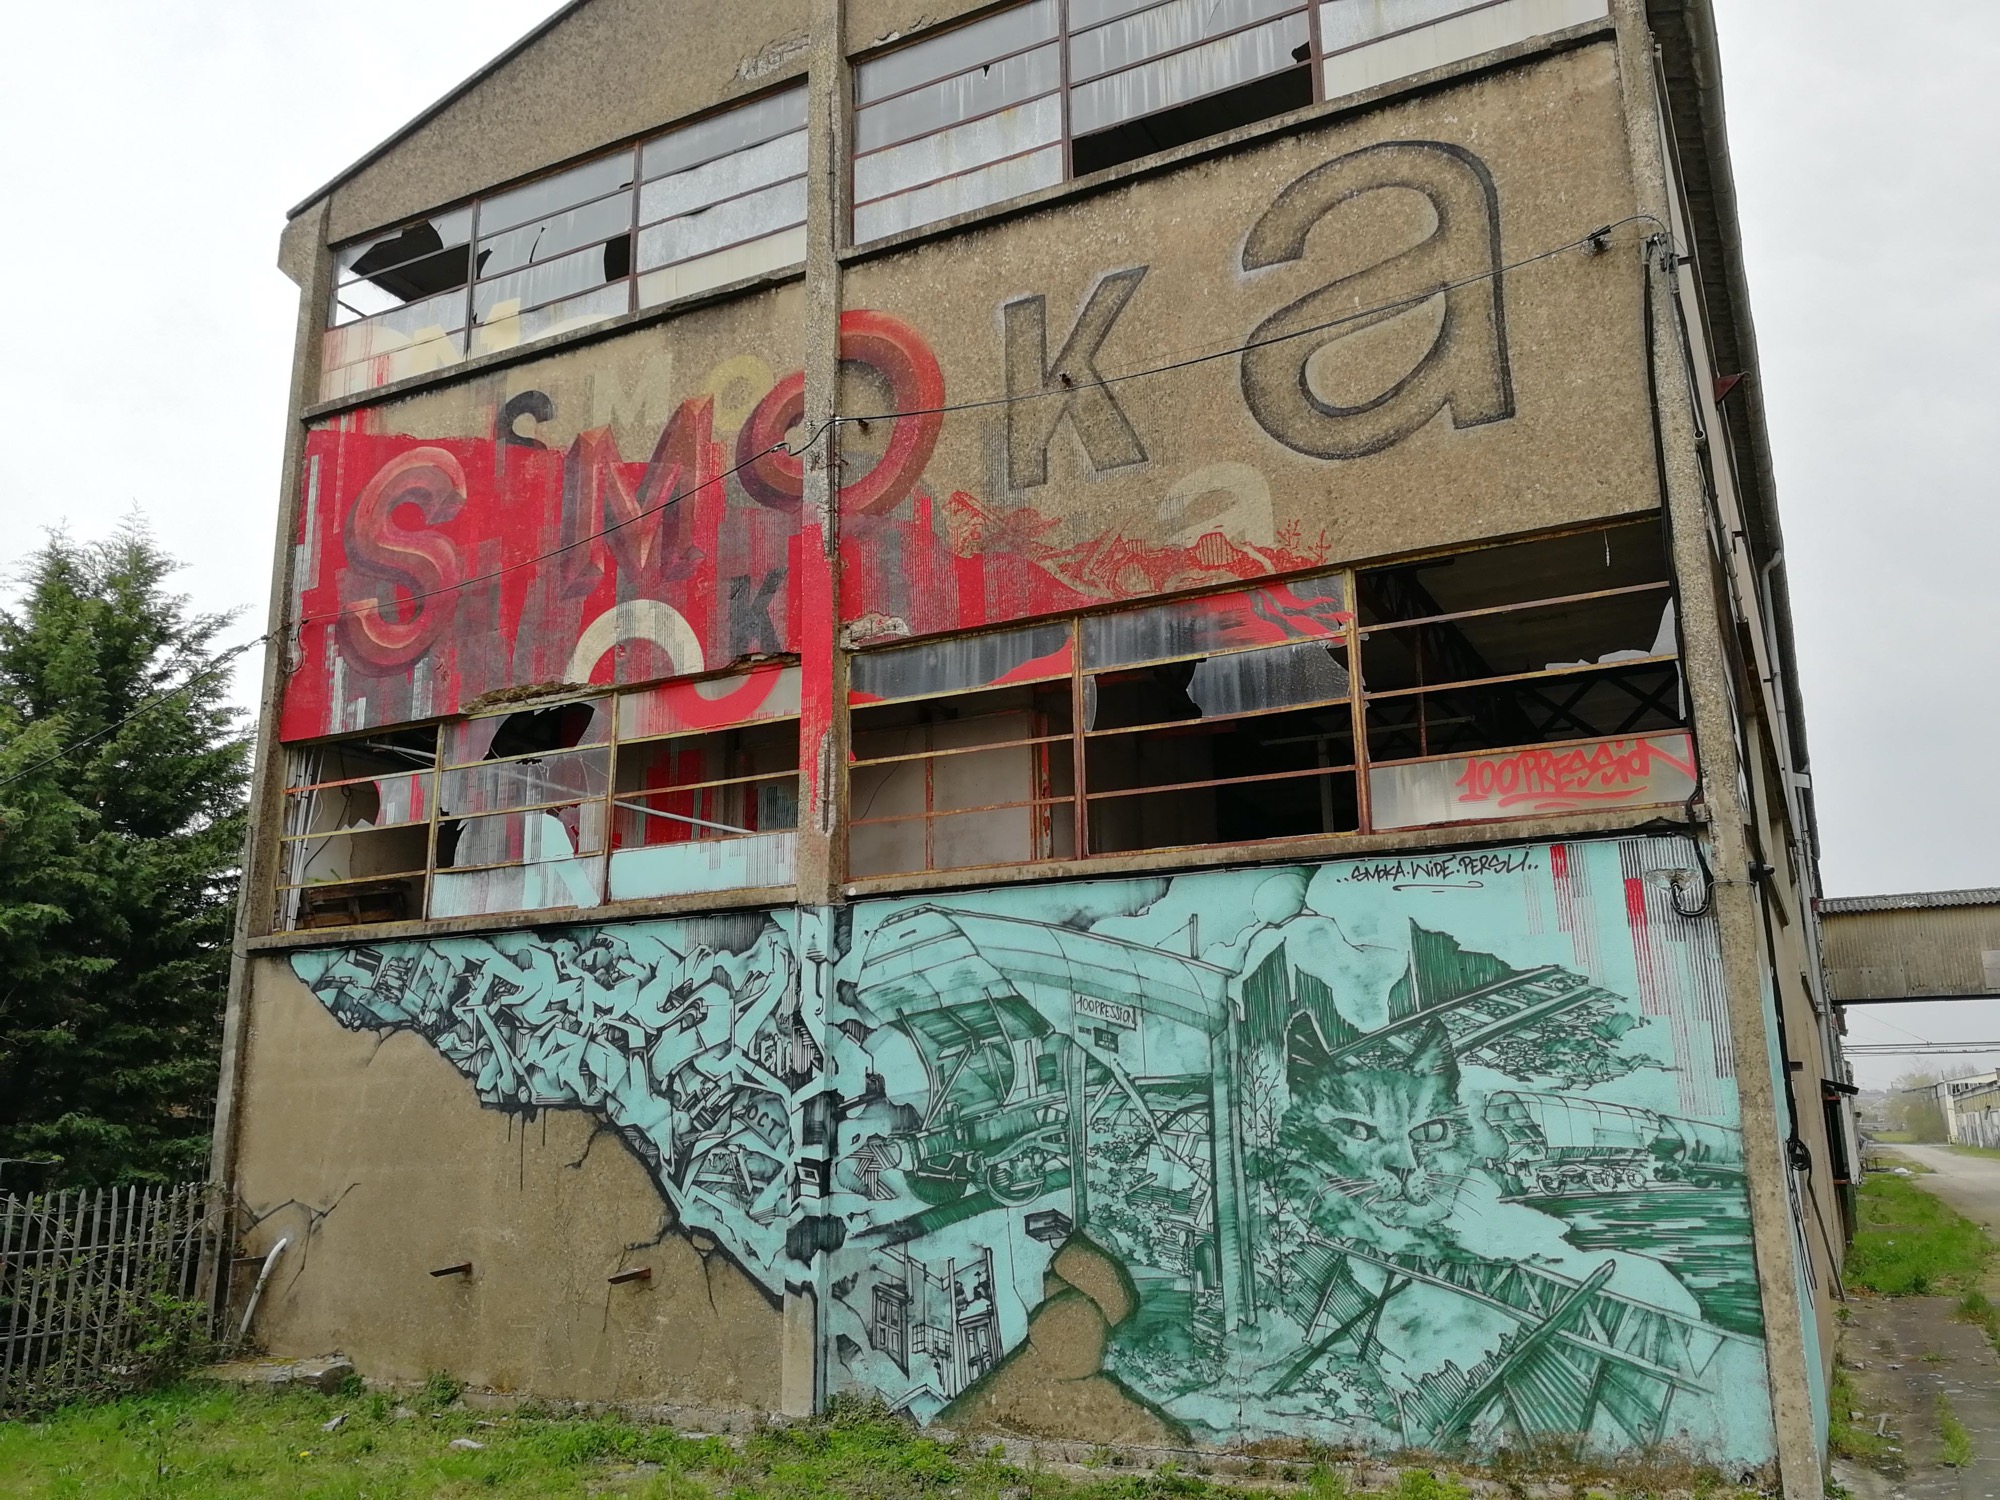 Graffiti 1369  de Smoka capturé par Rabot à Issé France